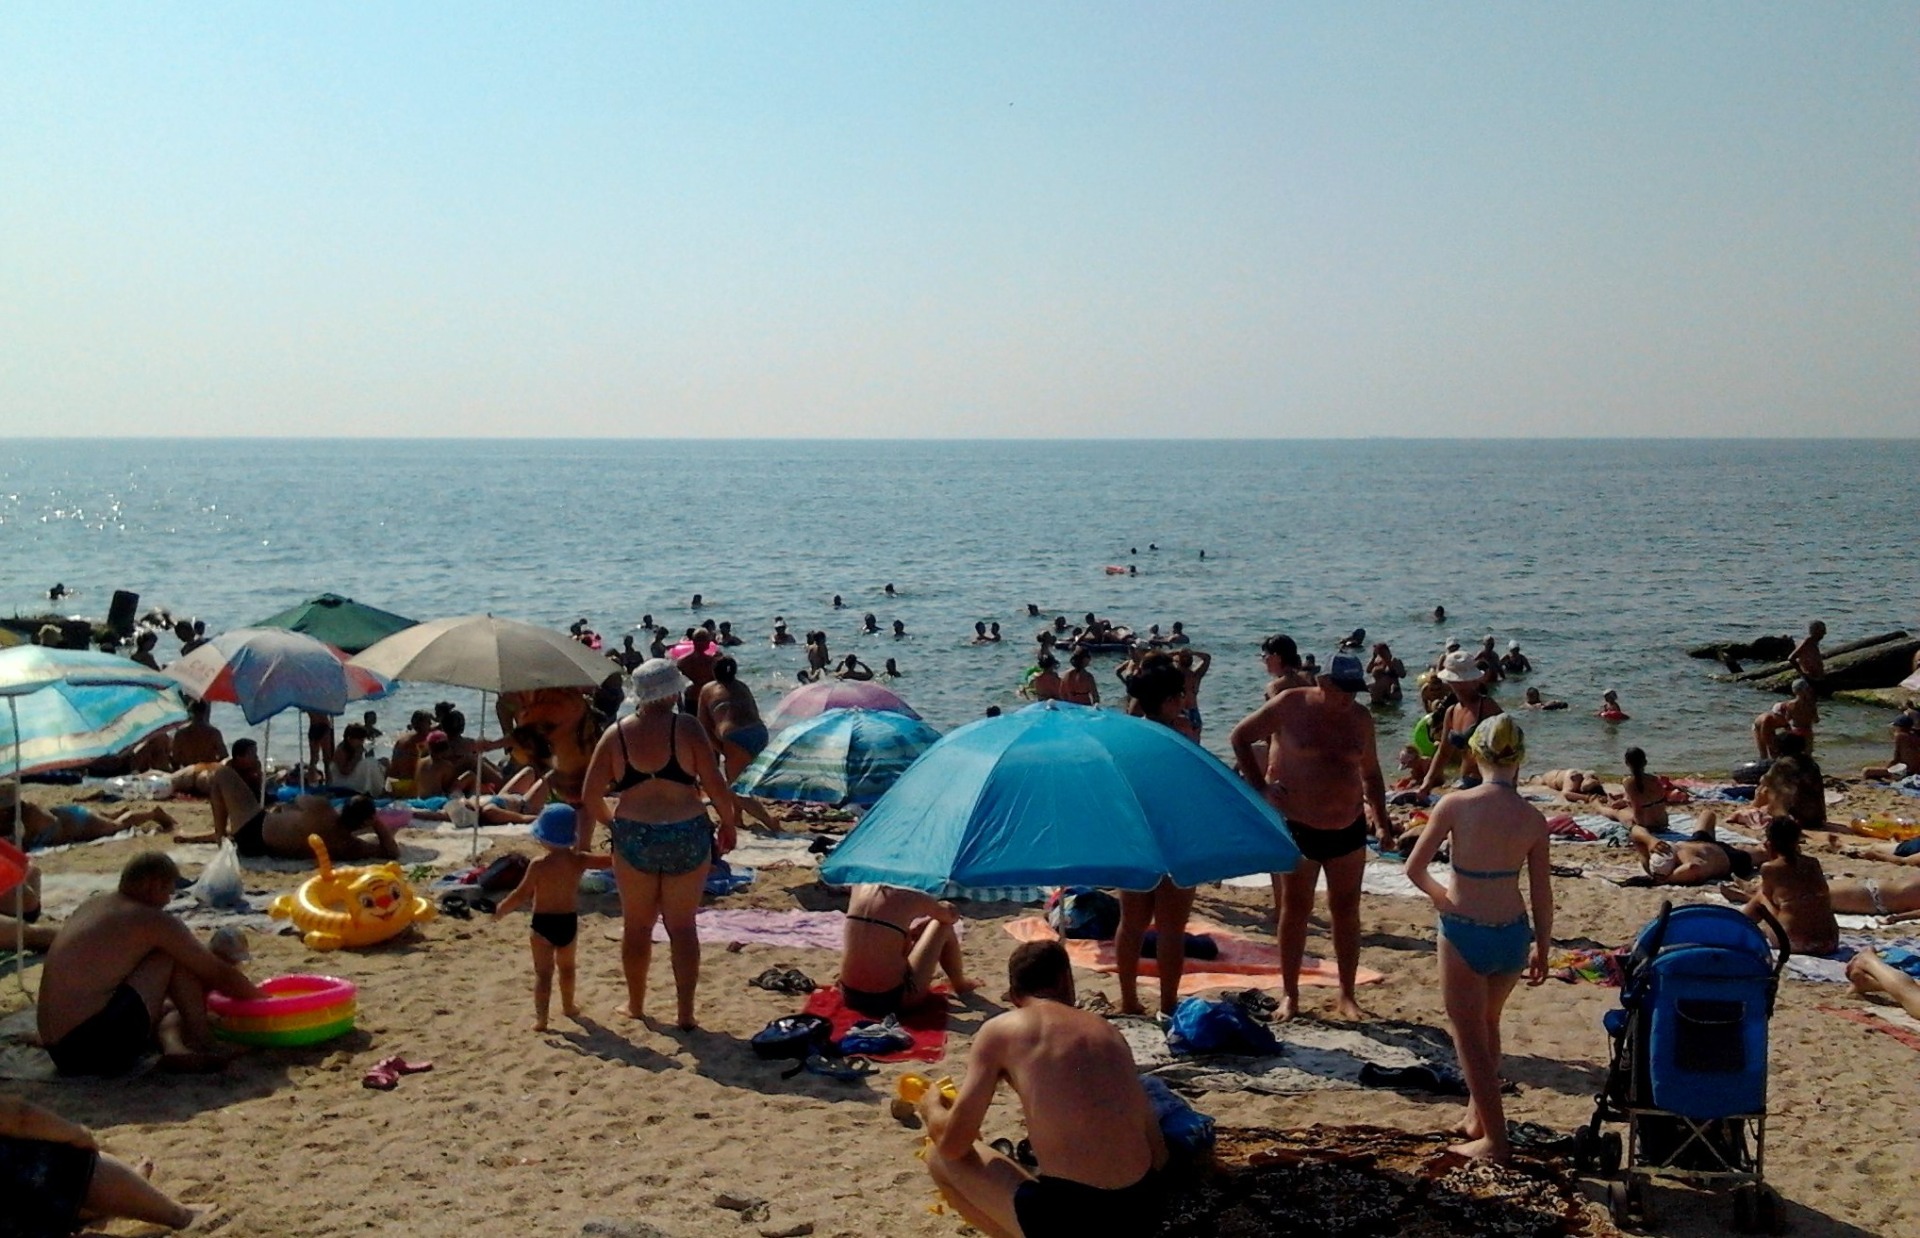 Селище Сєдове на Азові — морський курорт, куди їдуть відпочивати з «республіки». Фото з сайту traveling.dn.ua